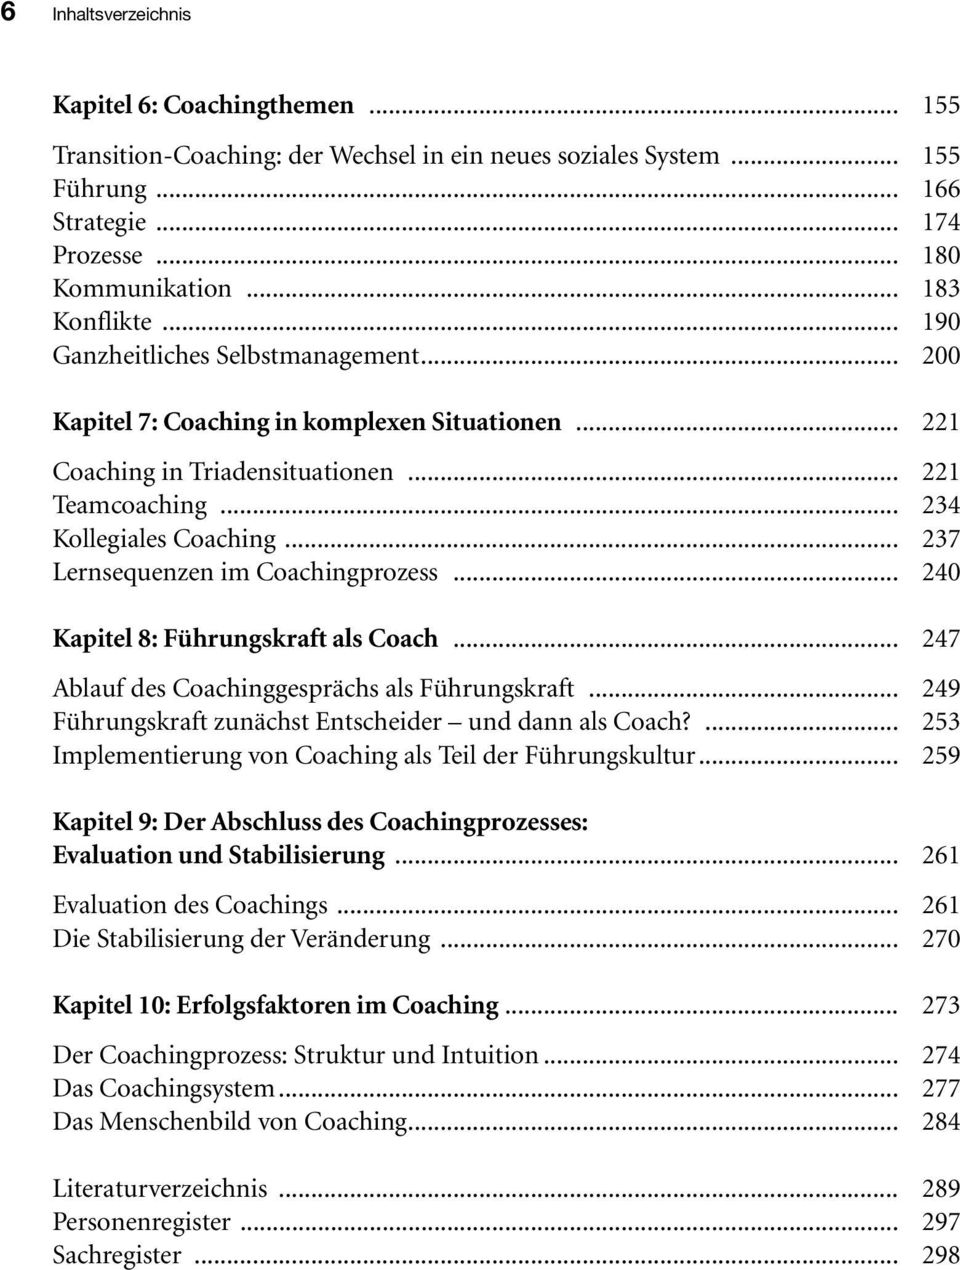 .. 237 Lernsequenzen im Coachingprozess... 240 Kapitel 8: Führungskraft als Coach... 247 Ablauf des Coachinggesprächs als Führungskraft... 249 Führungskraft zunächst Entscheider und dann als Coach?